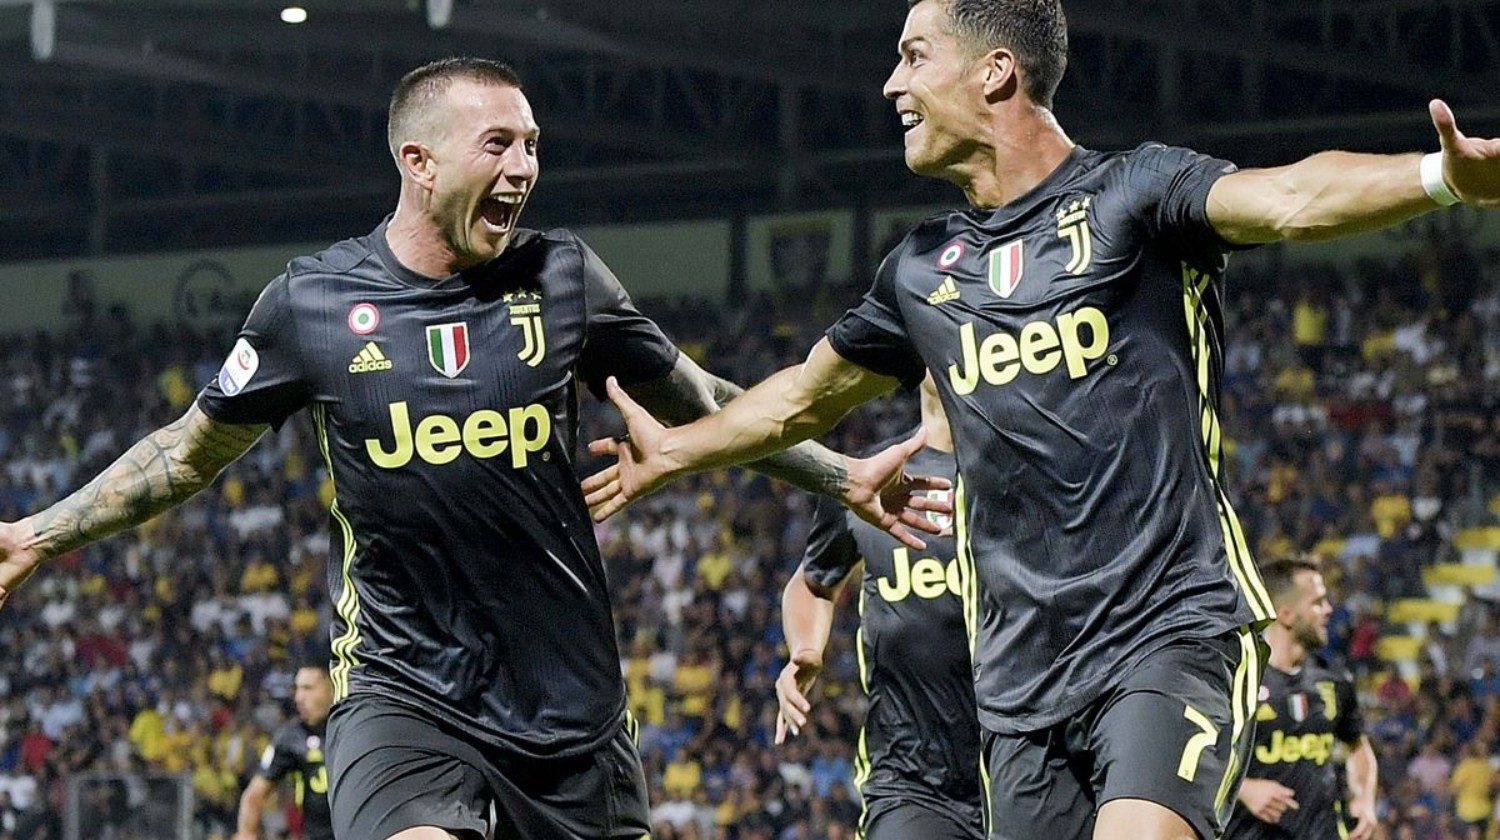 Juventus, Fan Token projesini başlatıyor - Kripto Para Haber